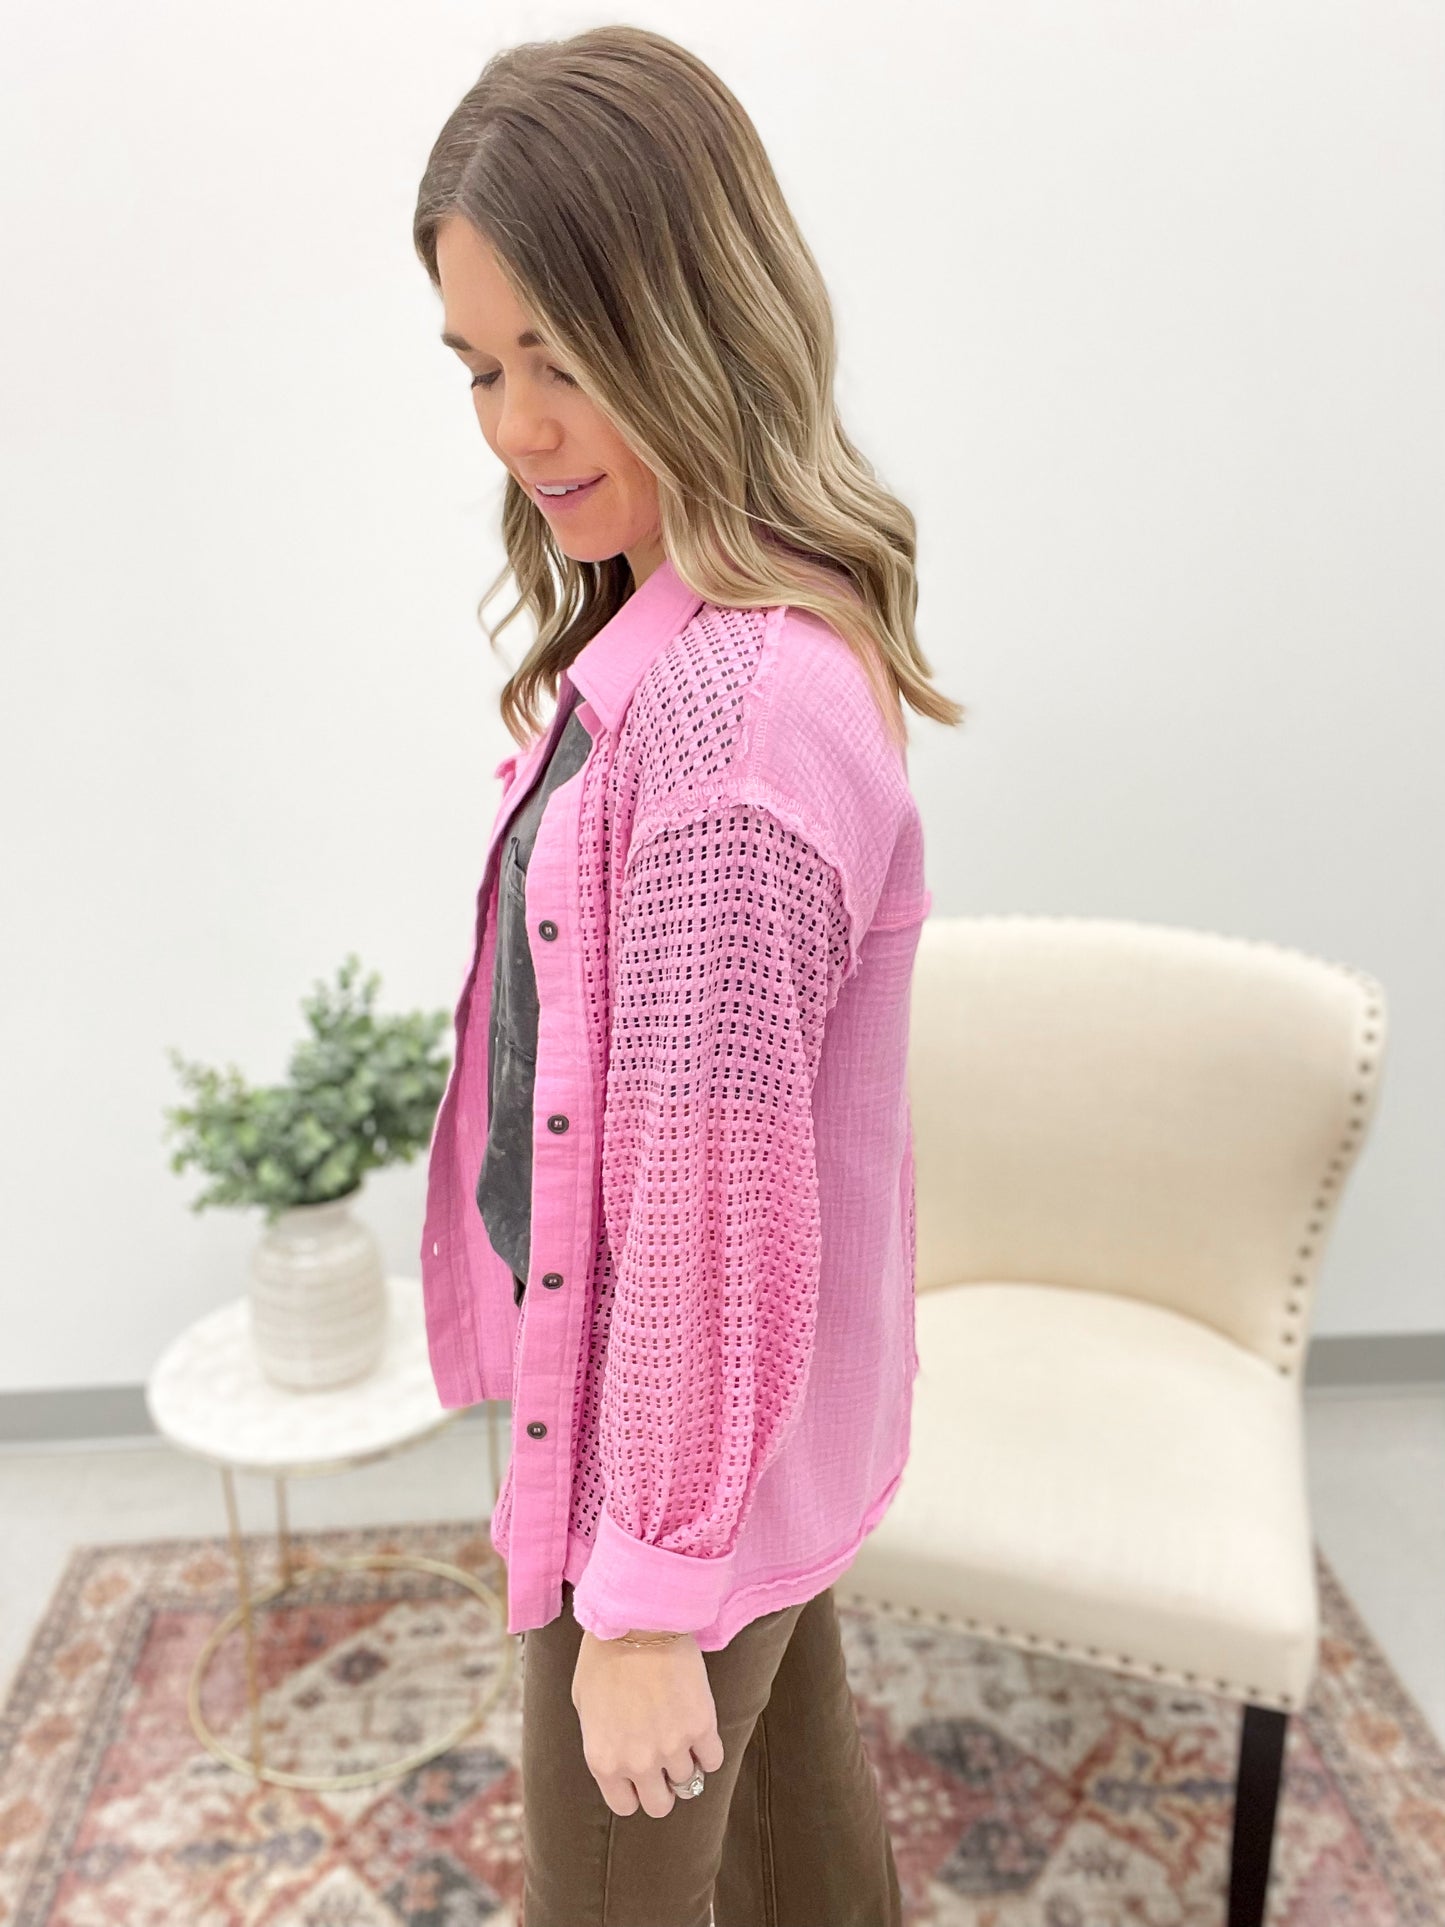 Sunset Beach Crochet Detail Cotton Top Pink Extended